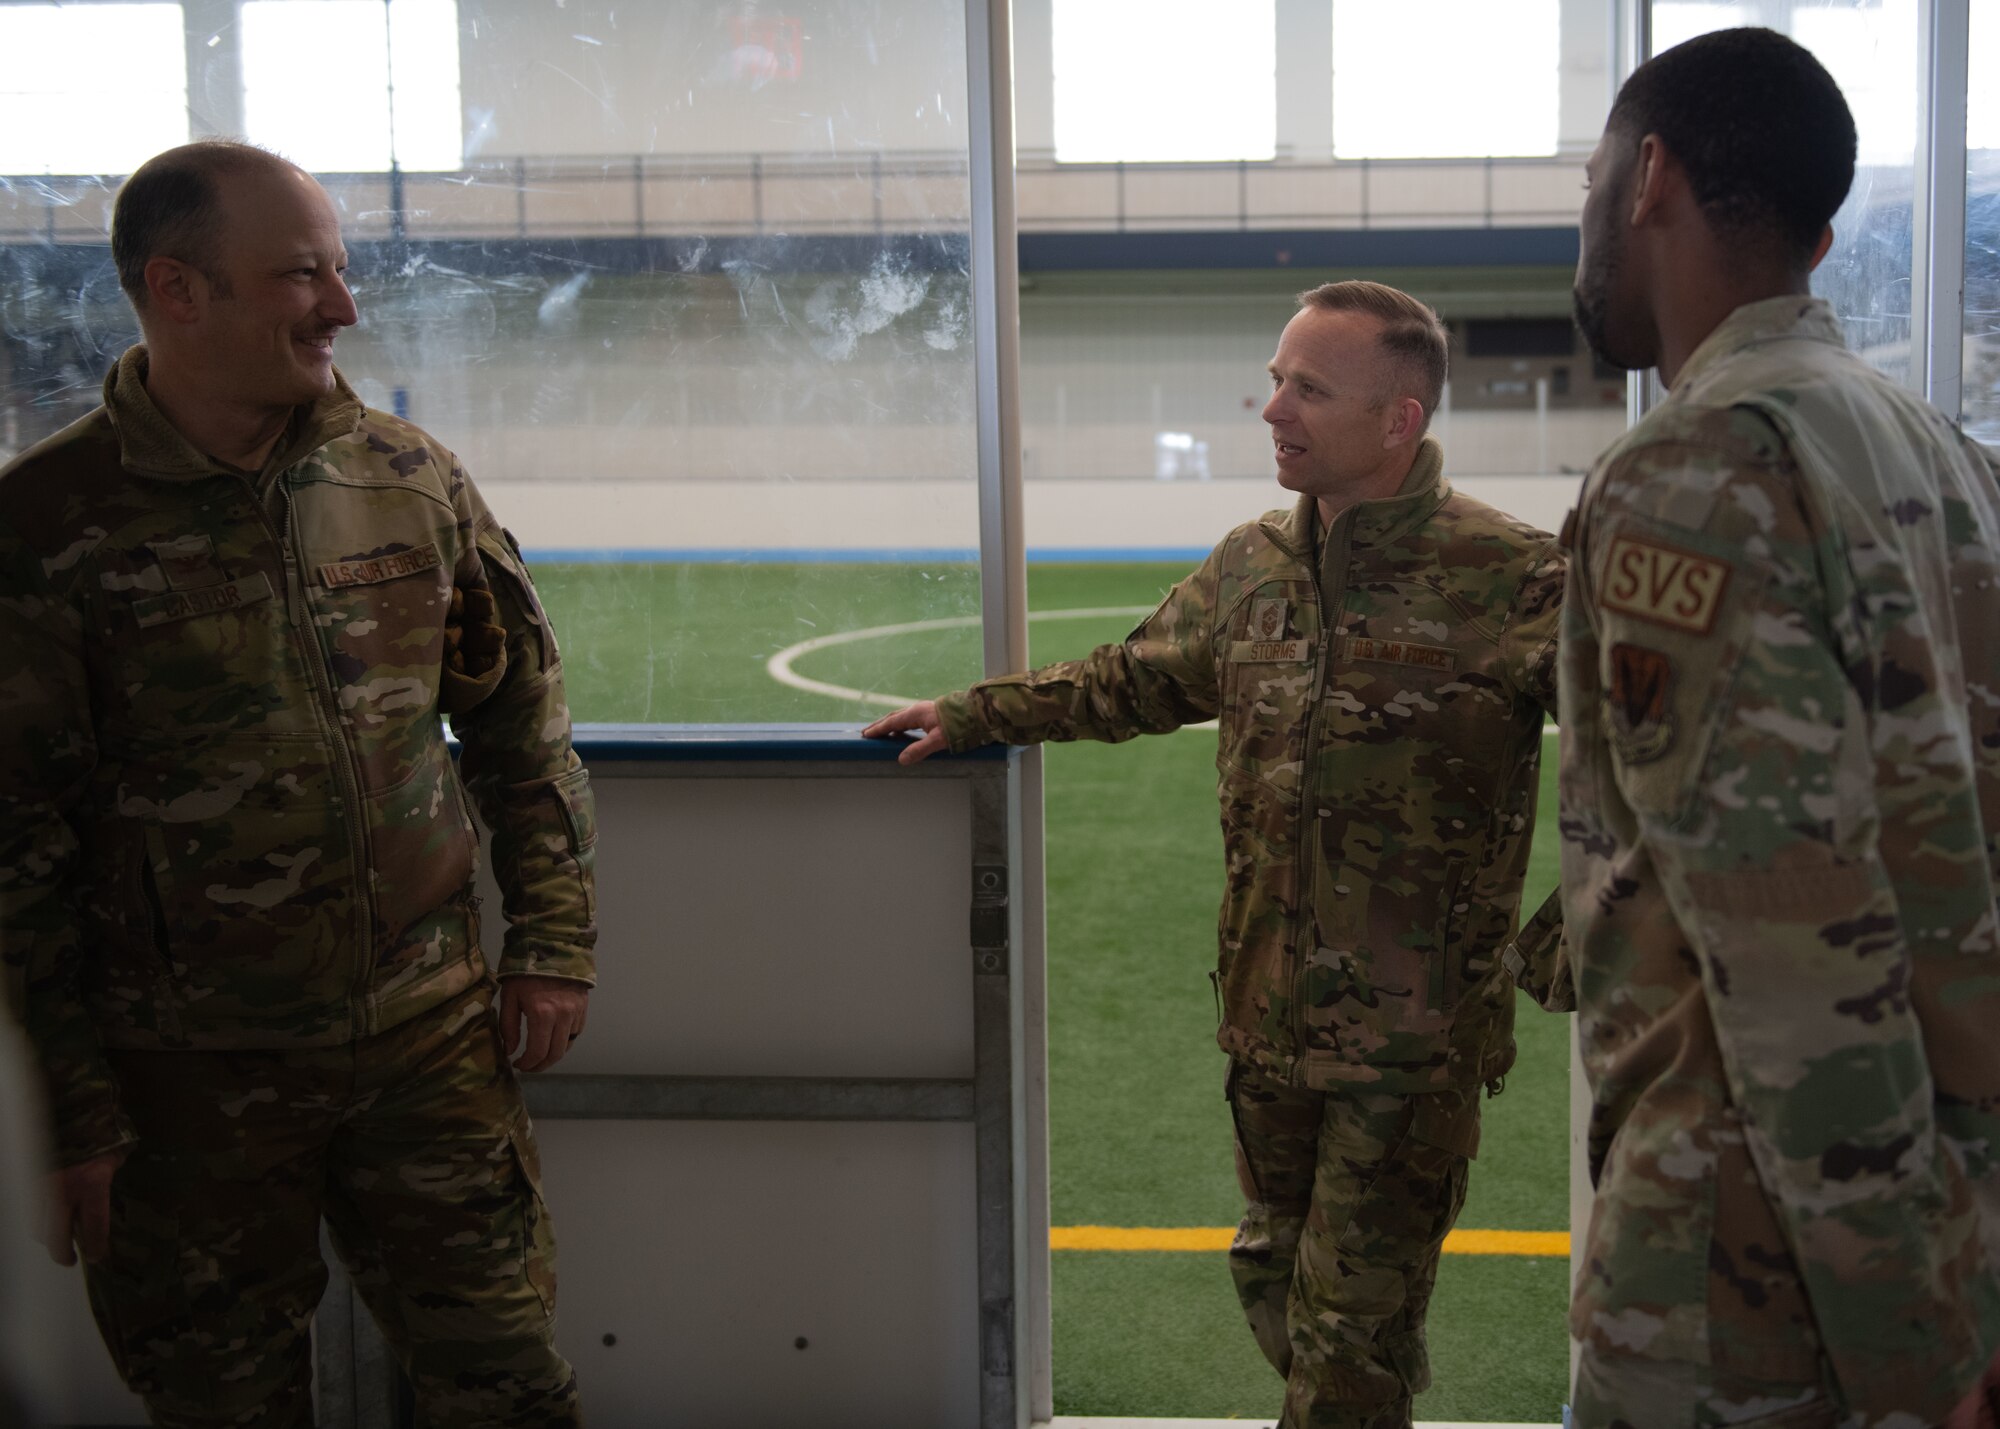 Airmen conversate in an indoor court.